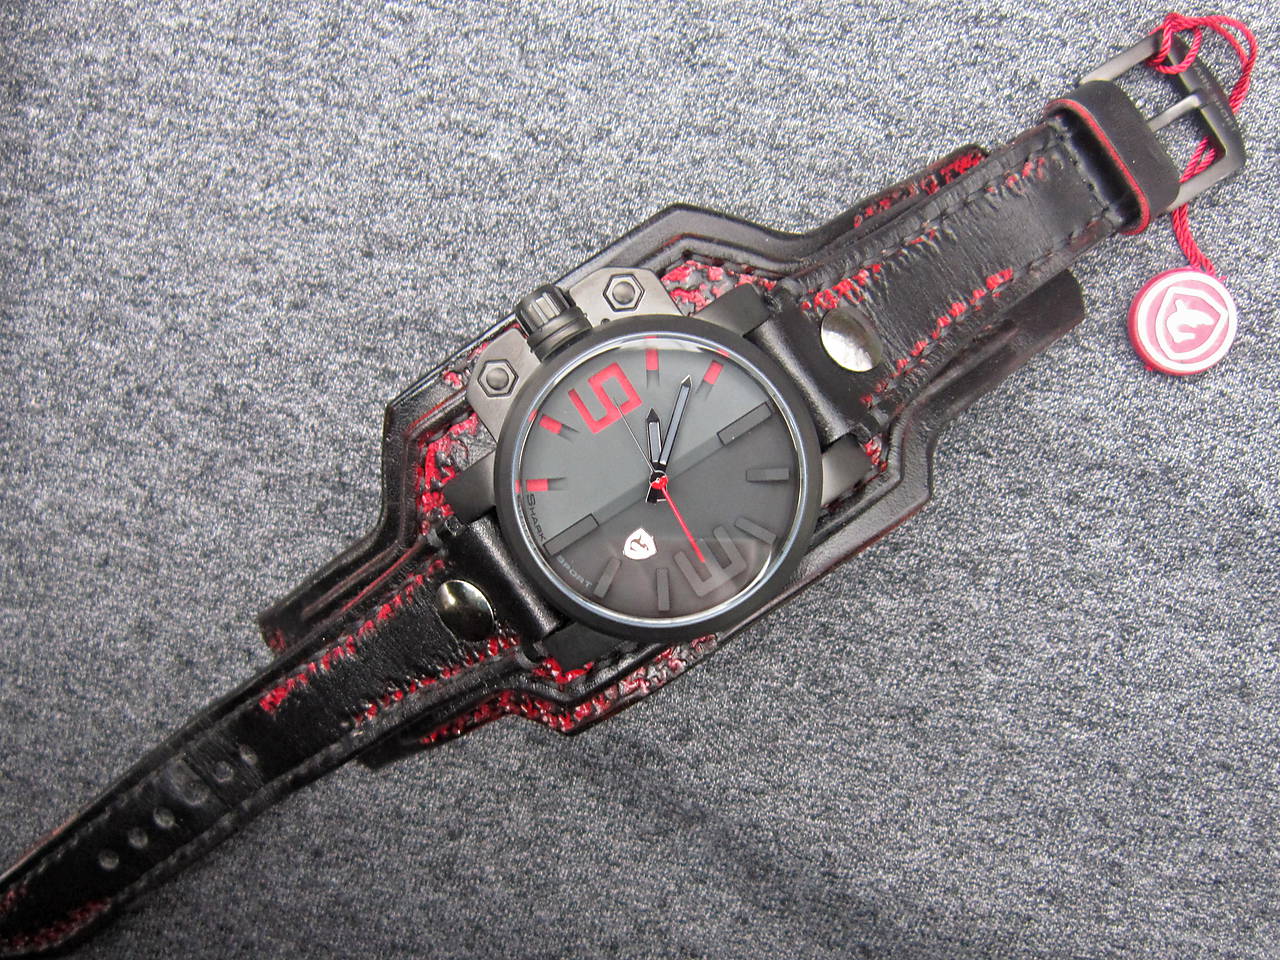 Pánske hodinky, čierno červený kožený náramok